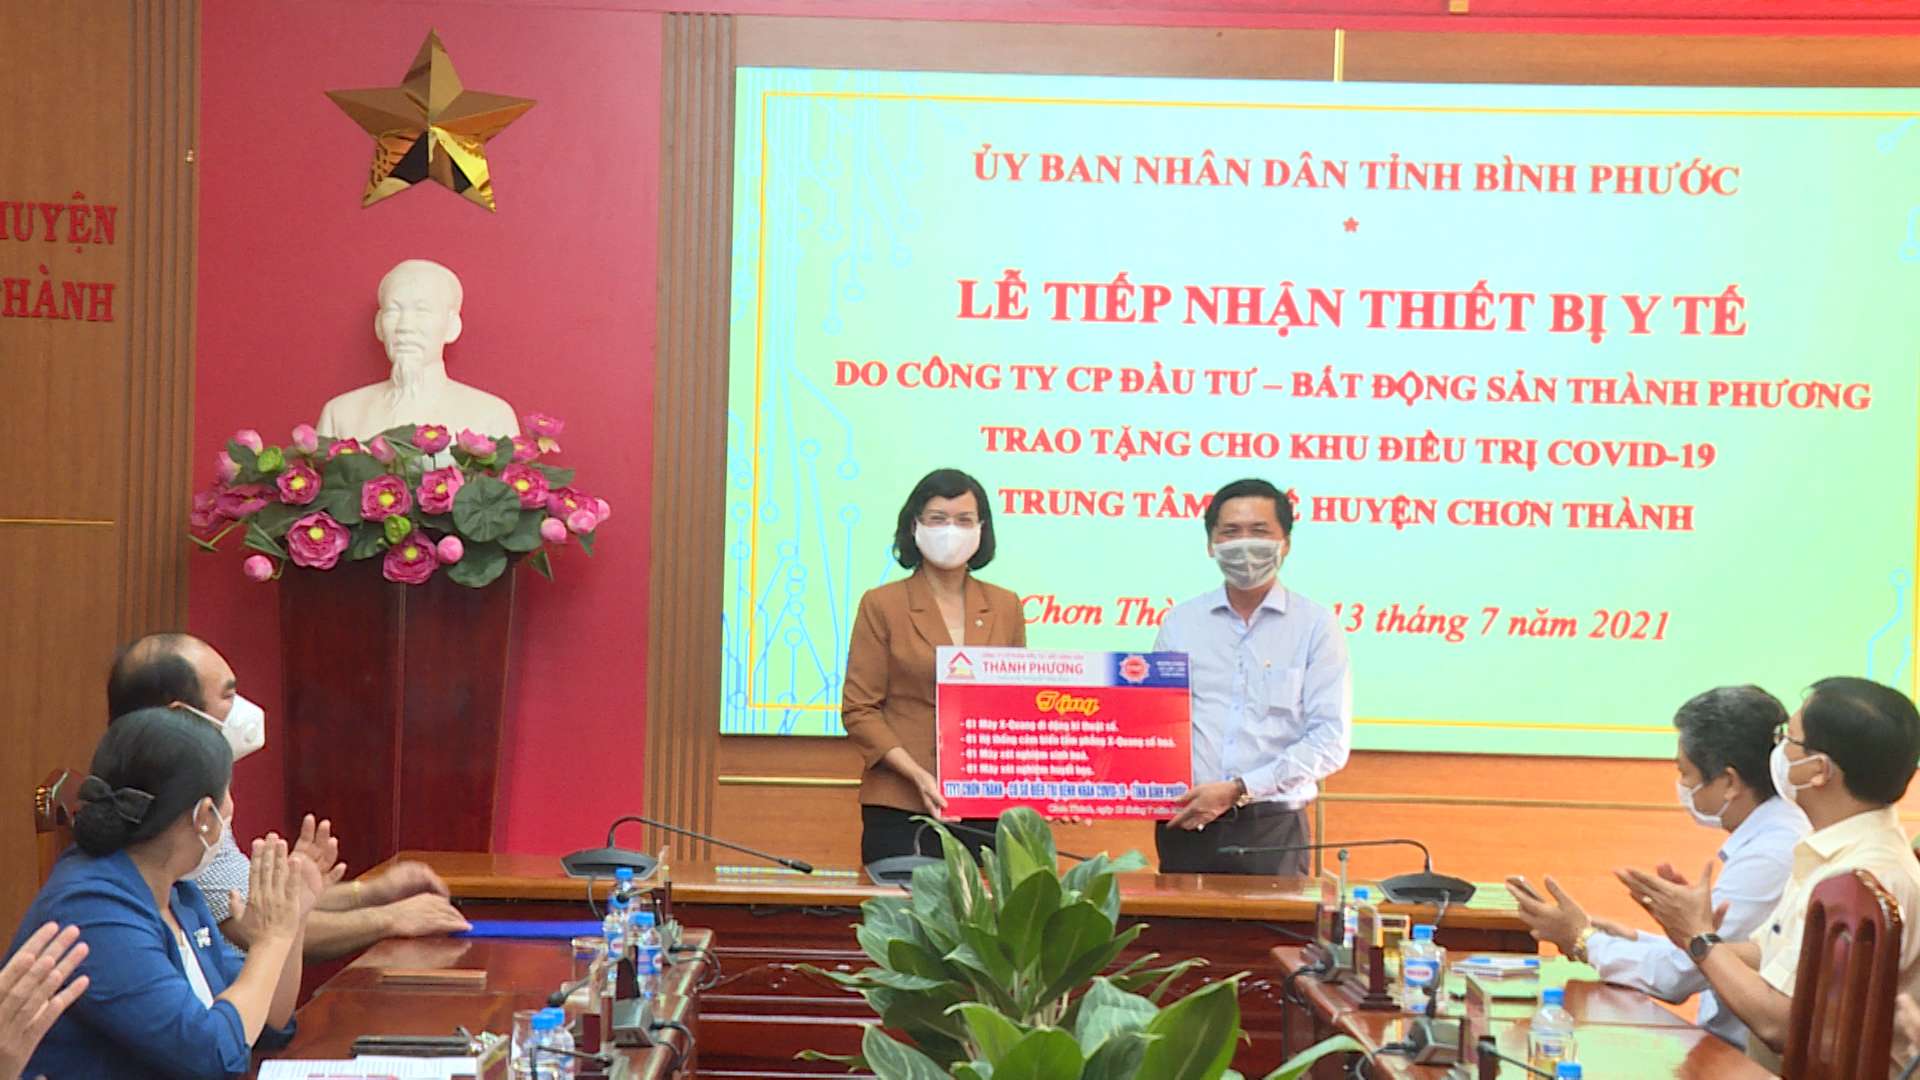 Bất Động Sản Thành Phương trao tặng bộ thiết bị y tế hỗ trợ điều trị Covid-19 cho trung tâm y tế huyện Chơn Thành